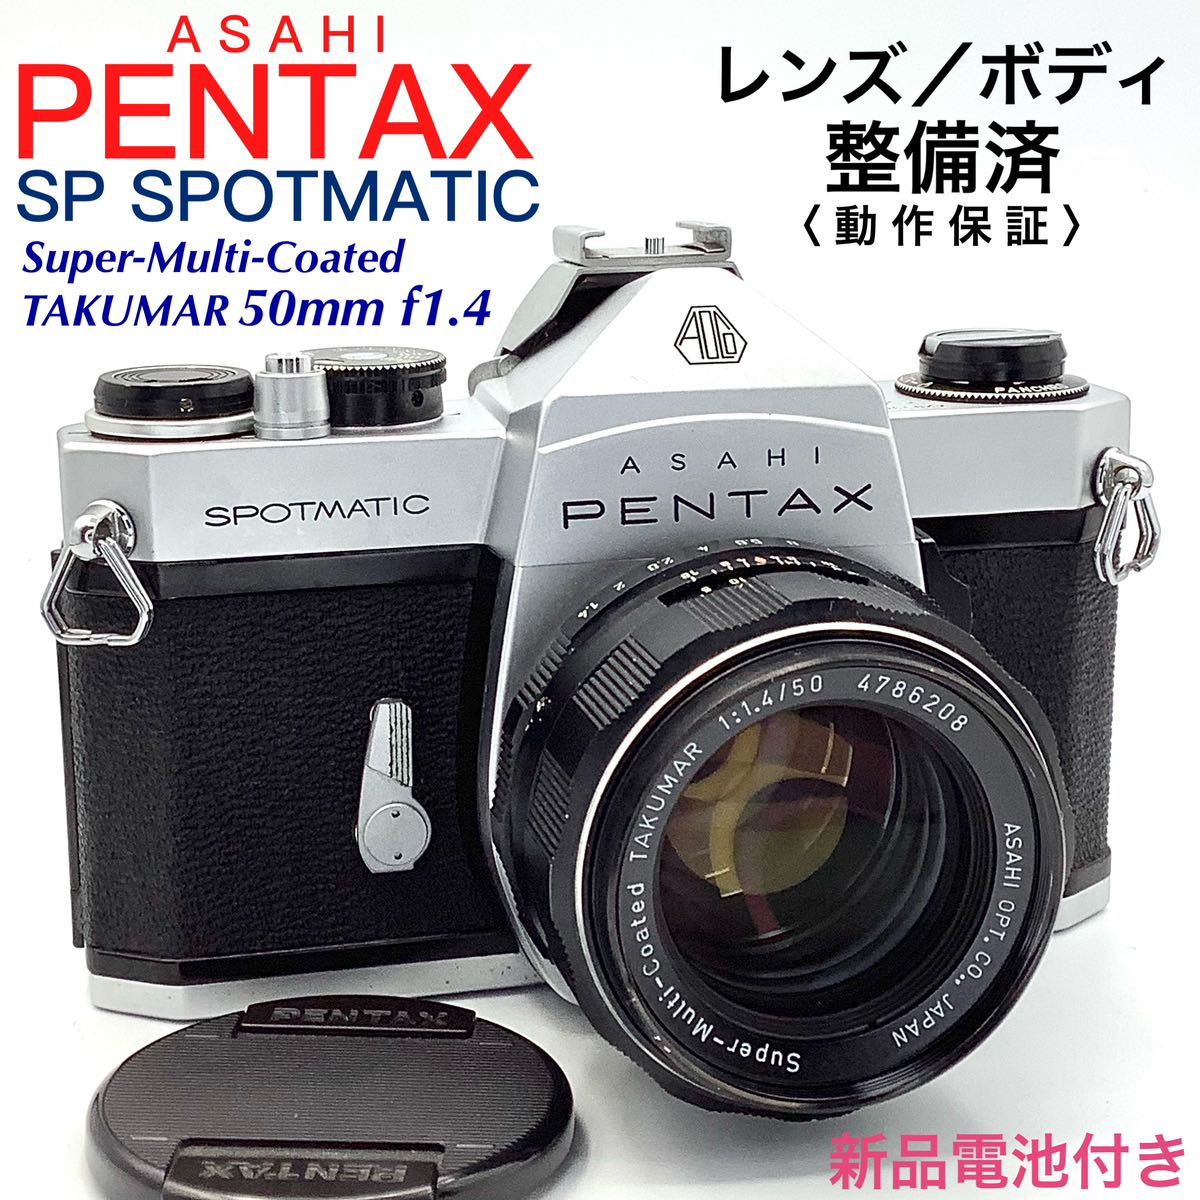 アサヒペンタックス SP SPOTMATIC - フィルムカメラ